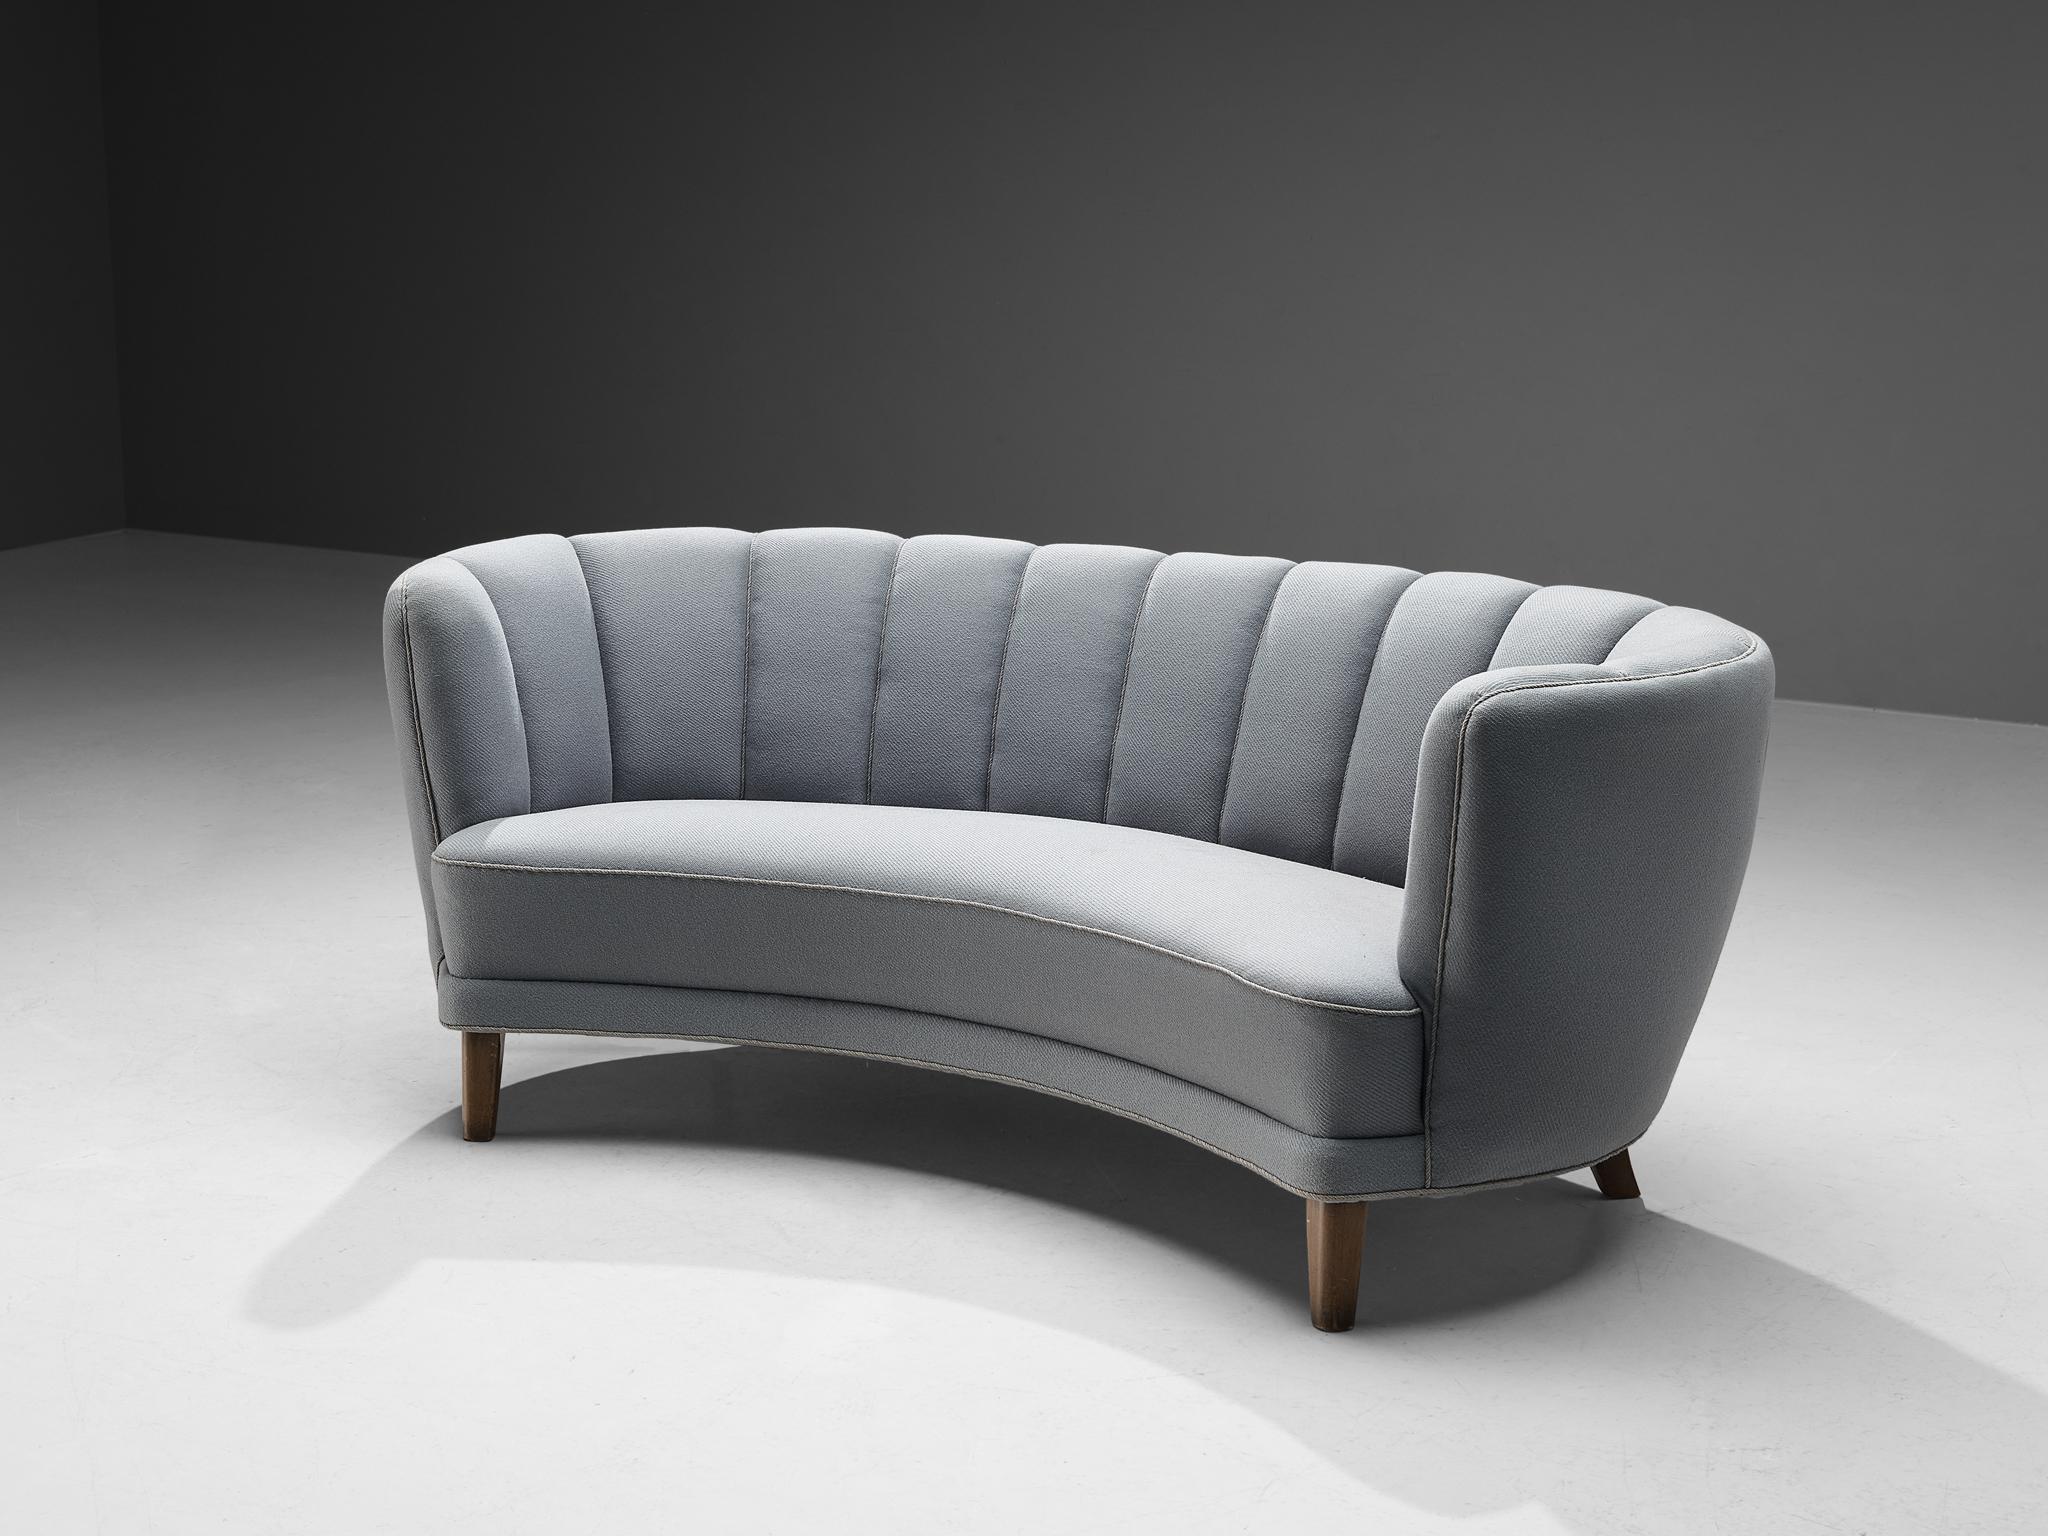 Banana Sofa, Stoff und Eiche, Dänemark, 1950er Jahre.

Dieses wuchtige Sofa basiert auf einer soliden Konstruktion aus runden Formen und geschwungenen Linien. Die Sitzfläche und die Rückenlehne sind organisch geformt und zusammen mit dem Fehlen von